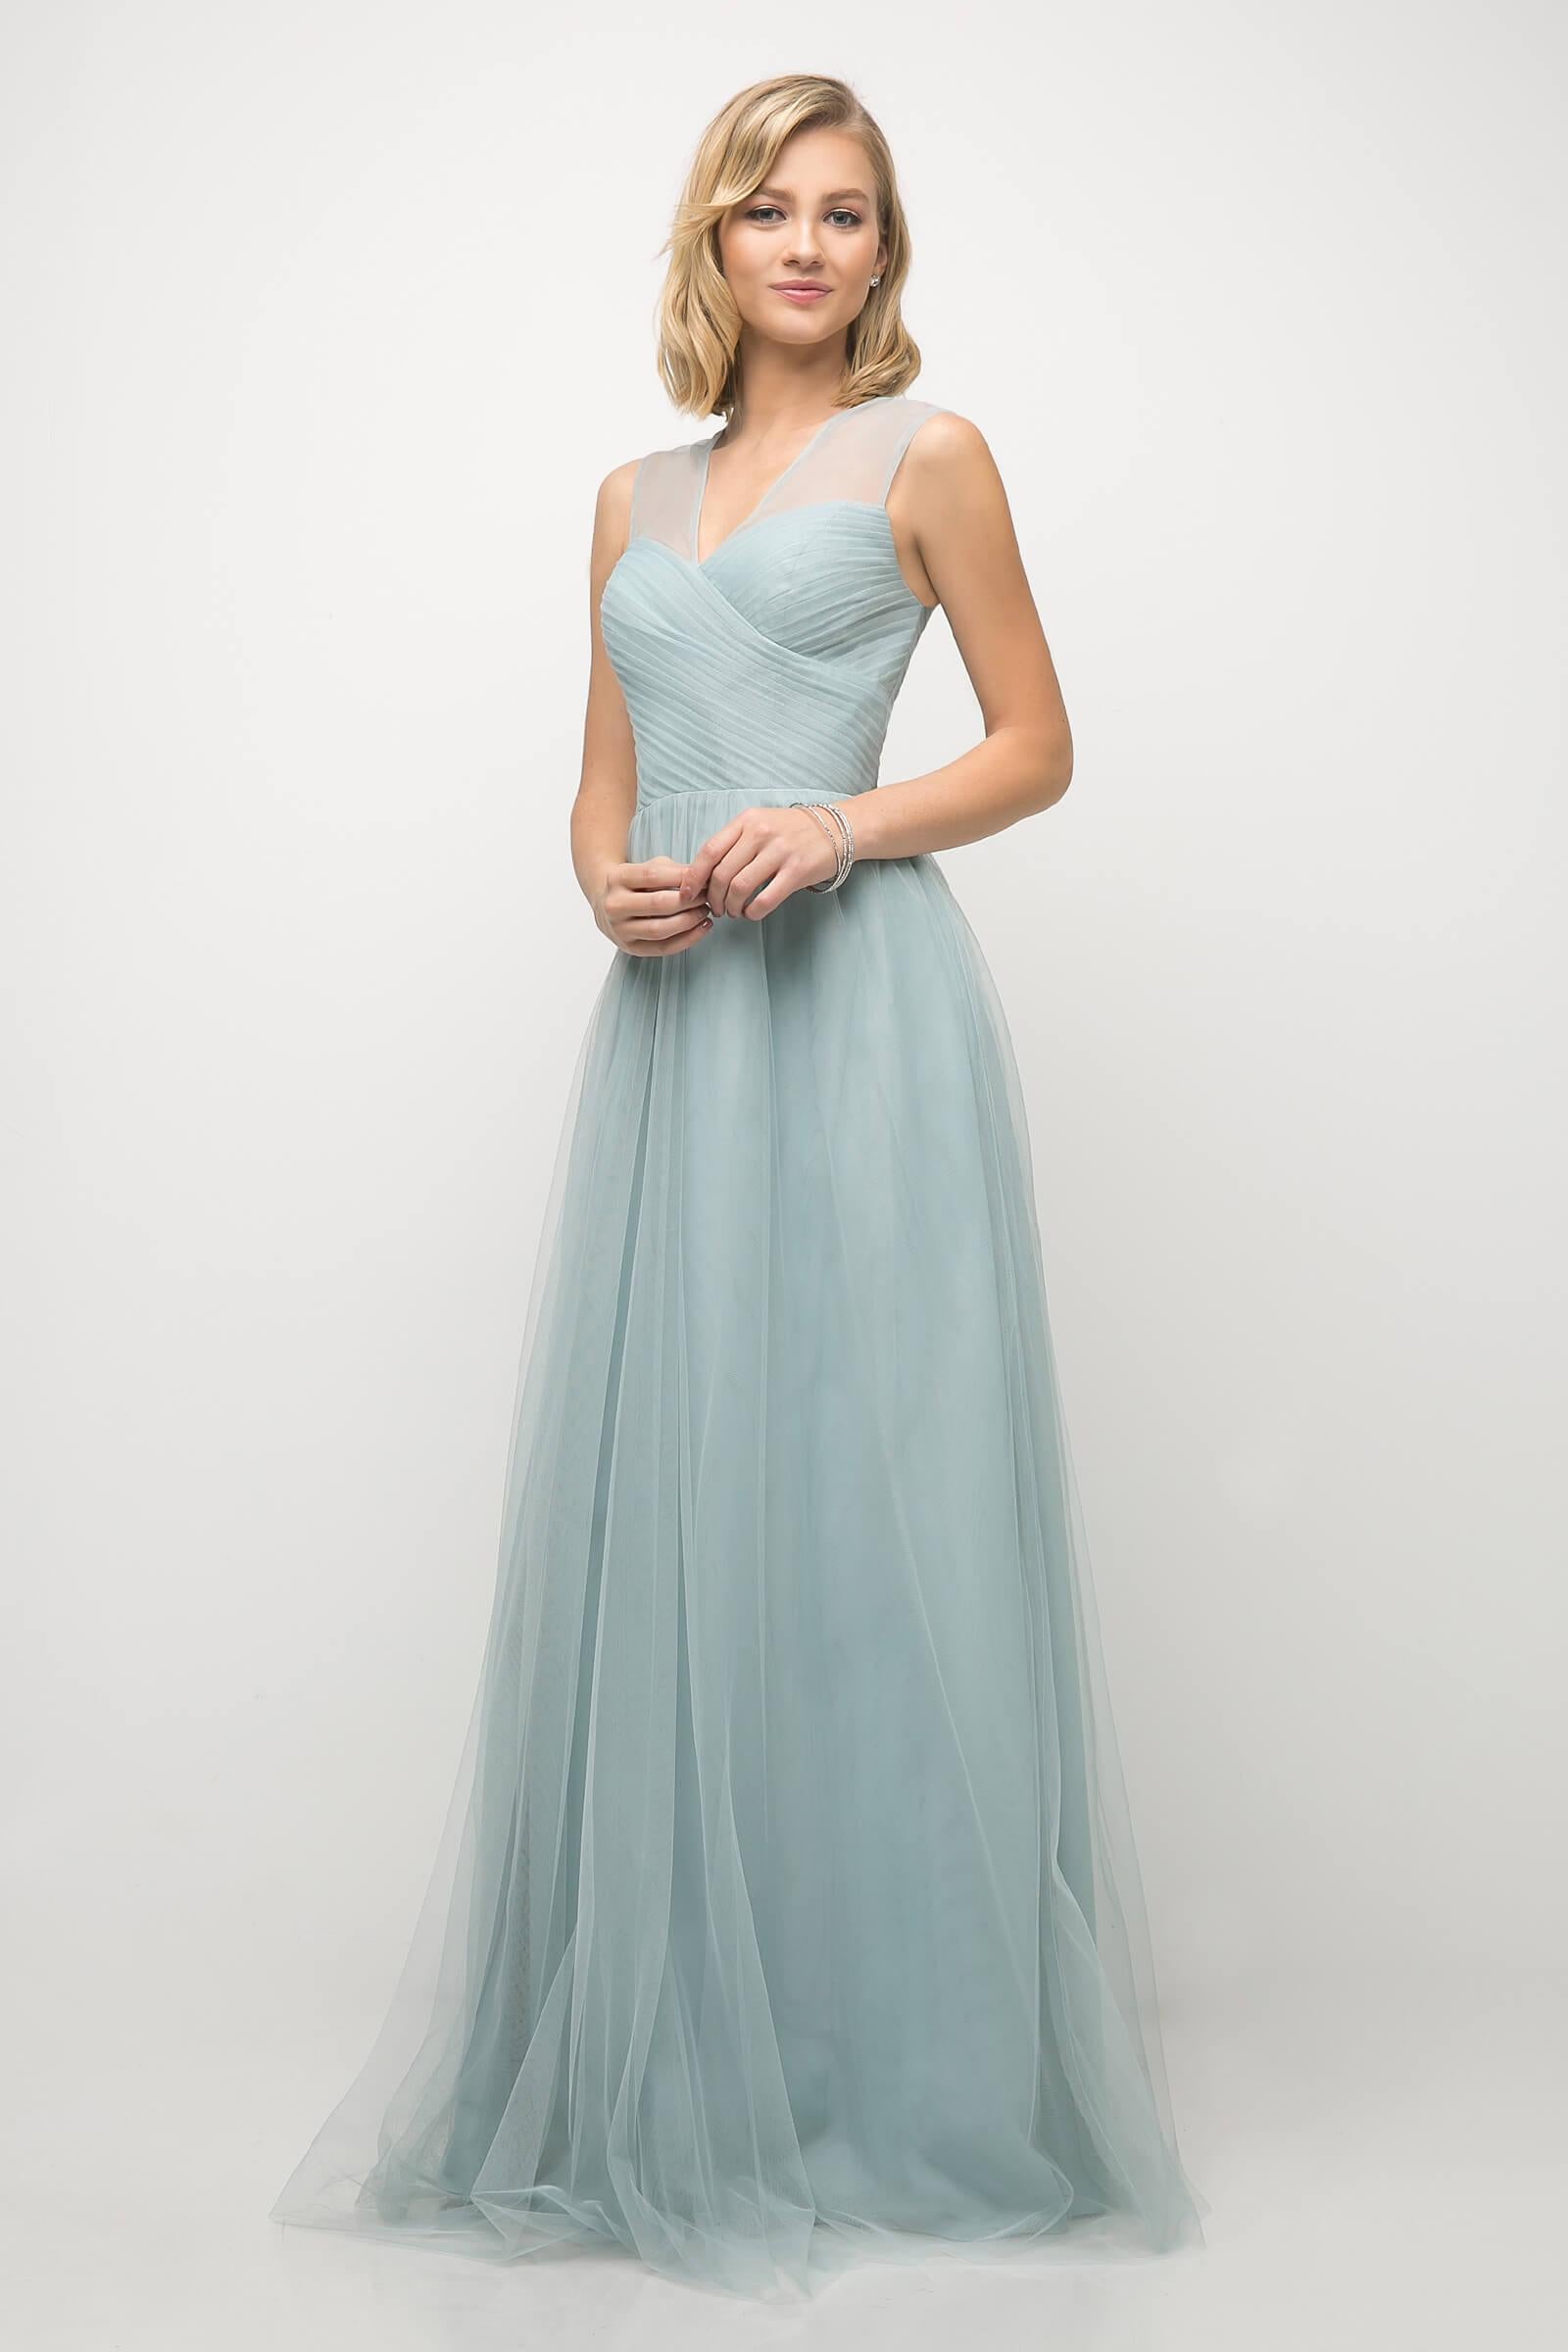 Long Plus Size Formal Dress Bridesmaid Gown Paris Blue